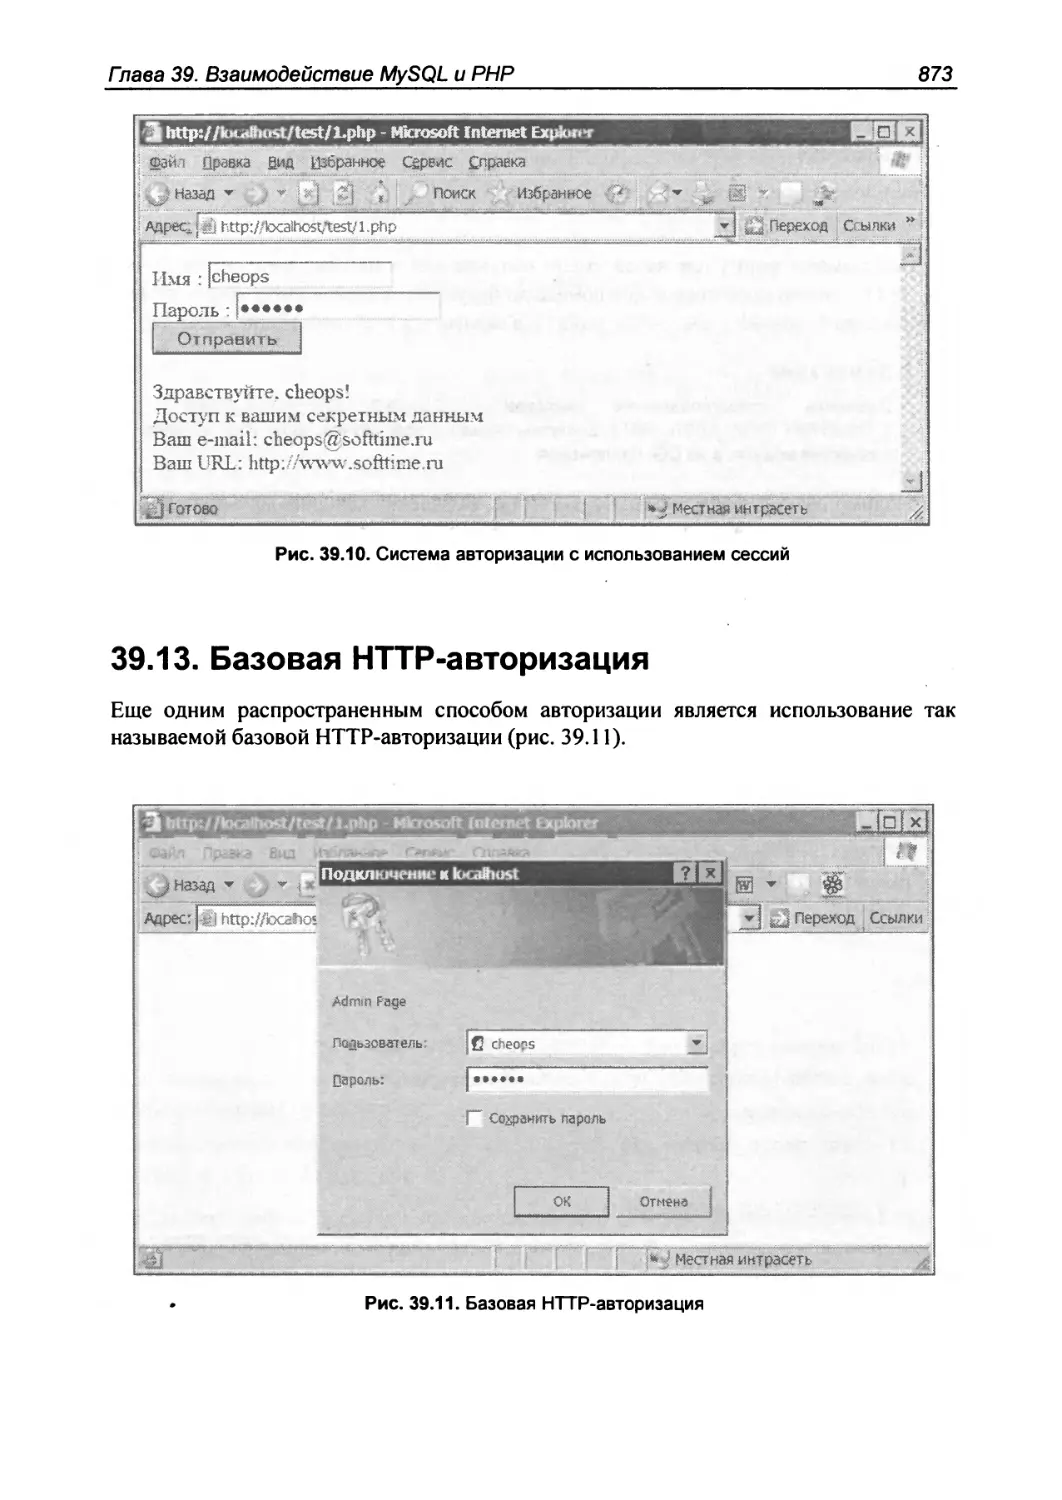 39.13. Базовая HTTP-авторизация